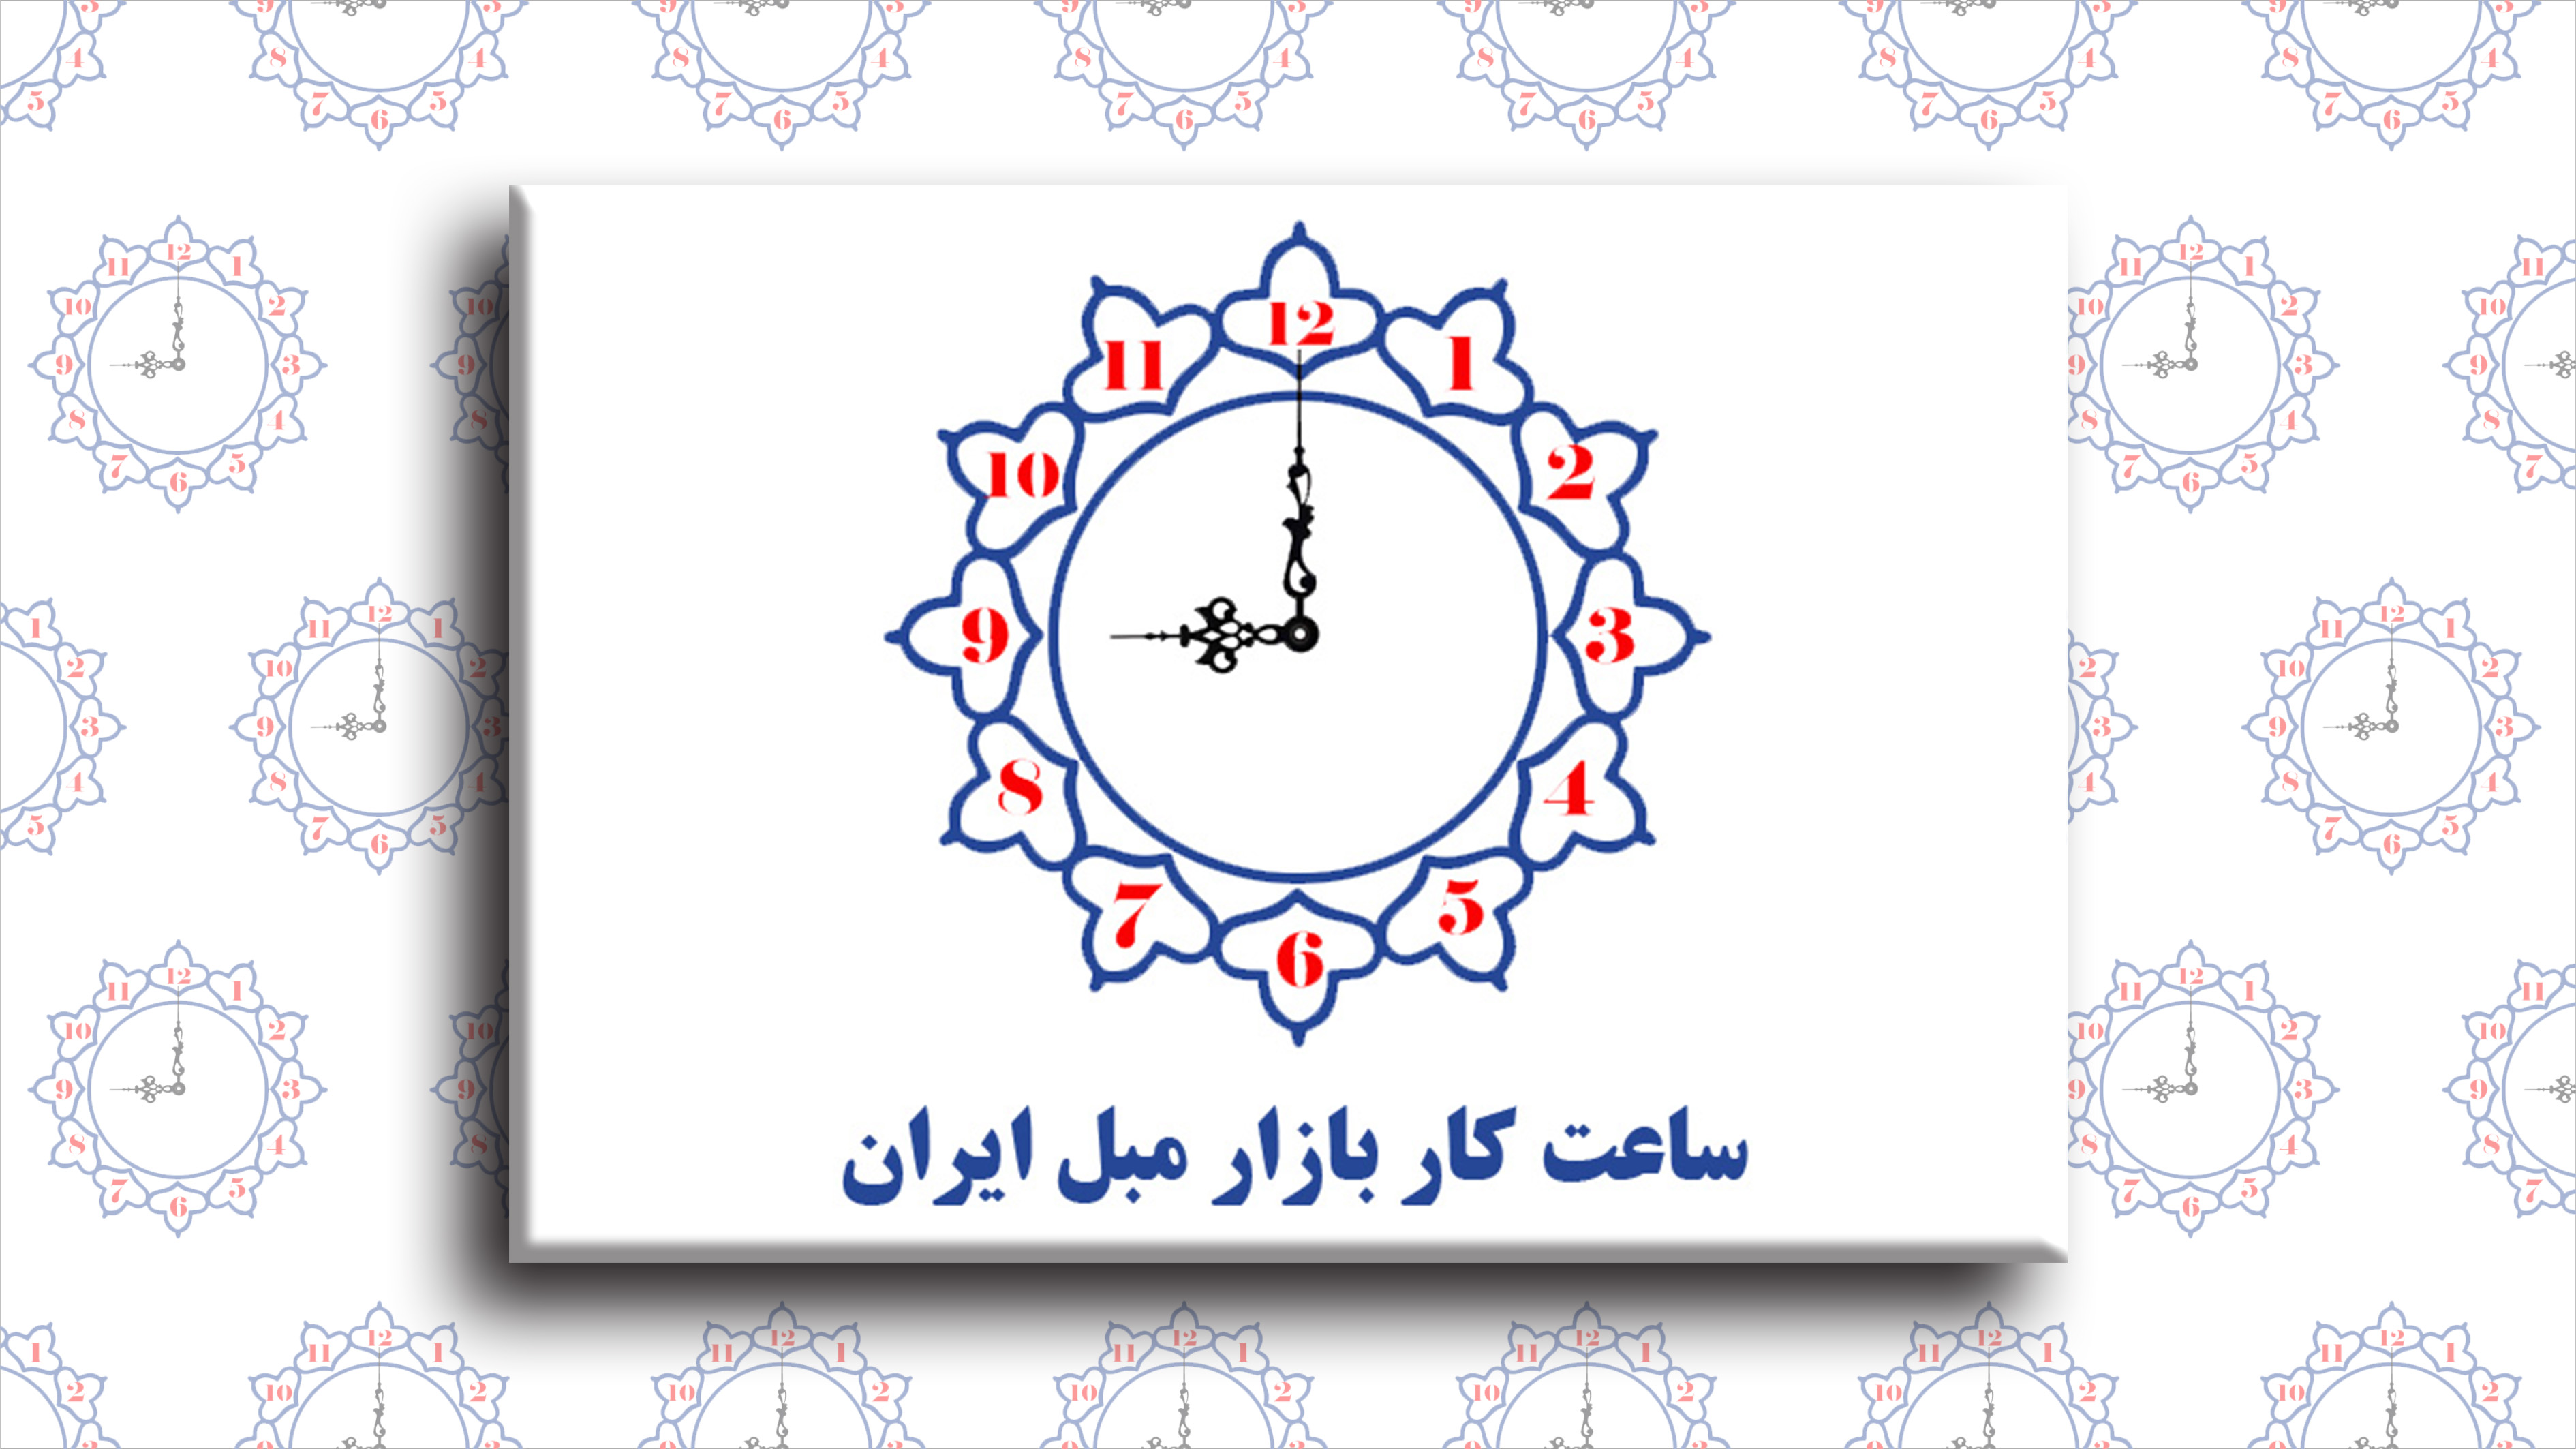 ساعت فعالیت بازار مبل ایران در 6ماه دوم سال 1401